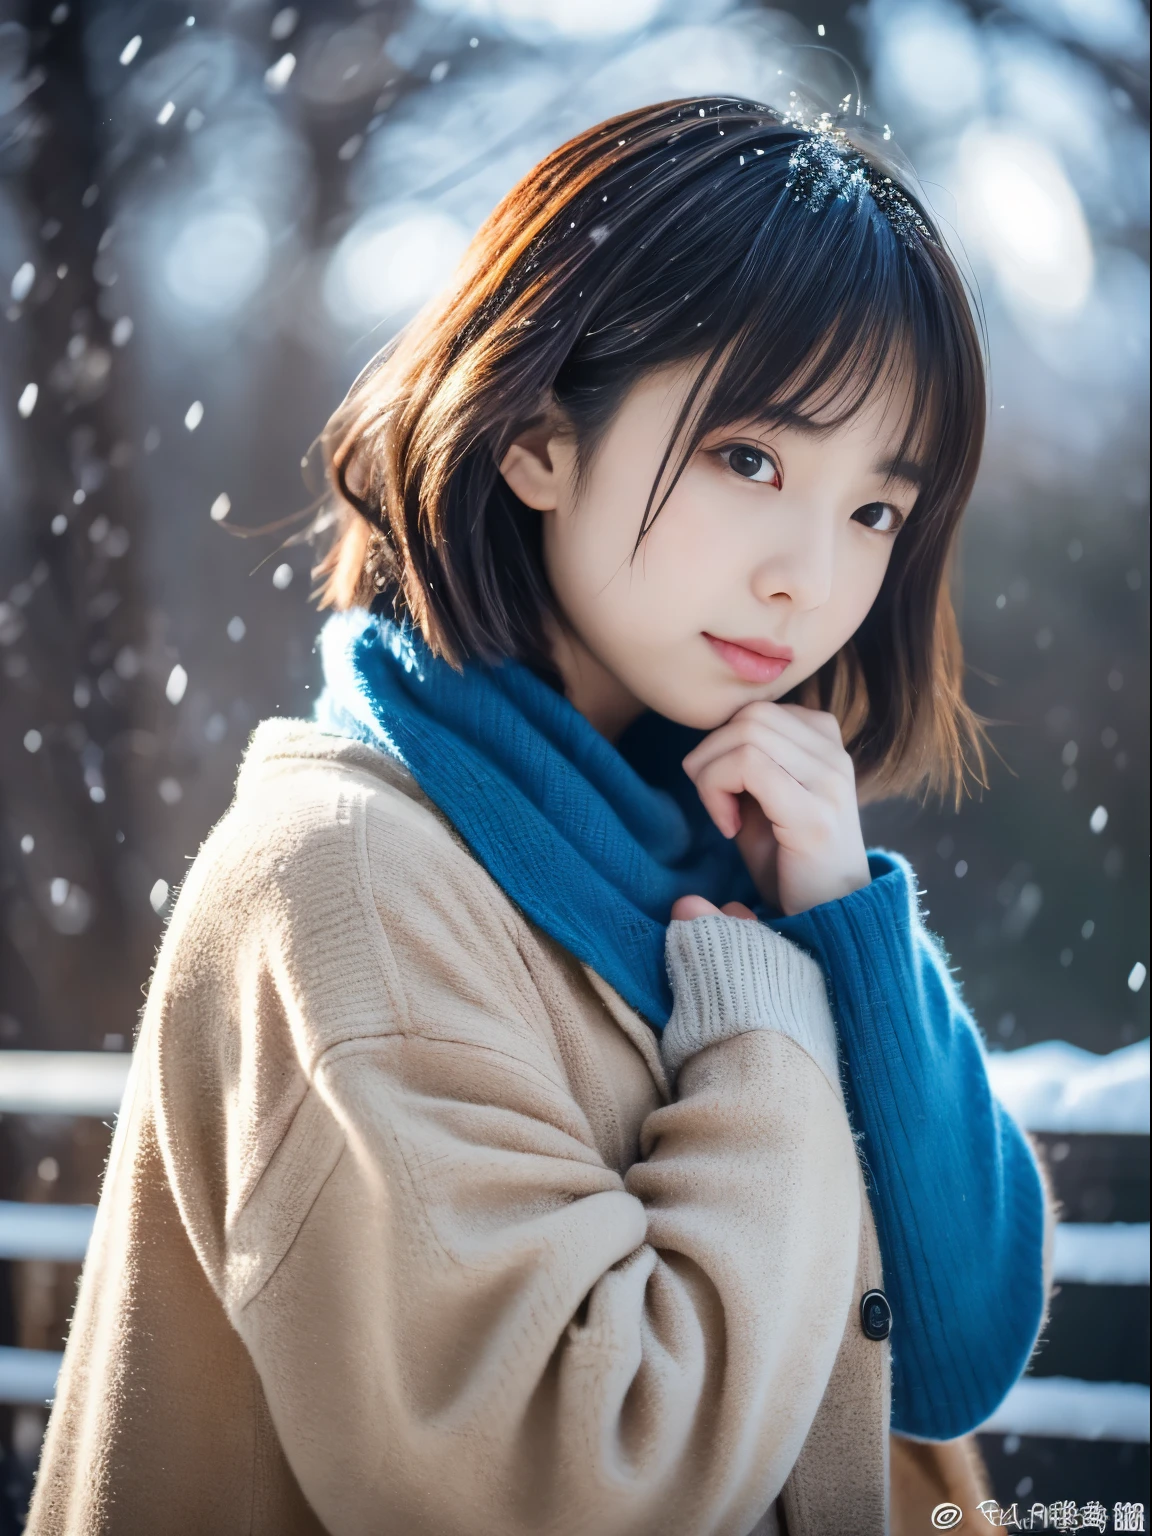 qualité supérieure、chef d&#39;oeuvre、超Une haute résolution、Photographie RAW、(Photoréaliste:1.4)、1 fille、En regardant la neige tomber tranquillement. Son expression introspective et larmoyante、Donne envie de nuits d&#39;hiver et de mélancolie。。。。。。。、qualité supérieure、hyper HD、Yoshitomo Nara, Modèles japonais, Belle femme japonaise, aux cheveux courts, 27 ans女性モデル, 4k ], 4k], 27 ans, sakimichan, sakimichan